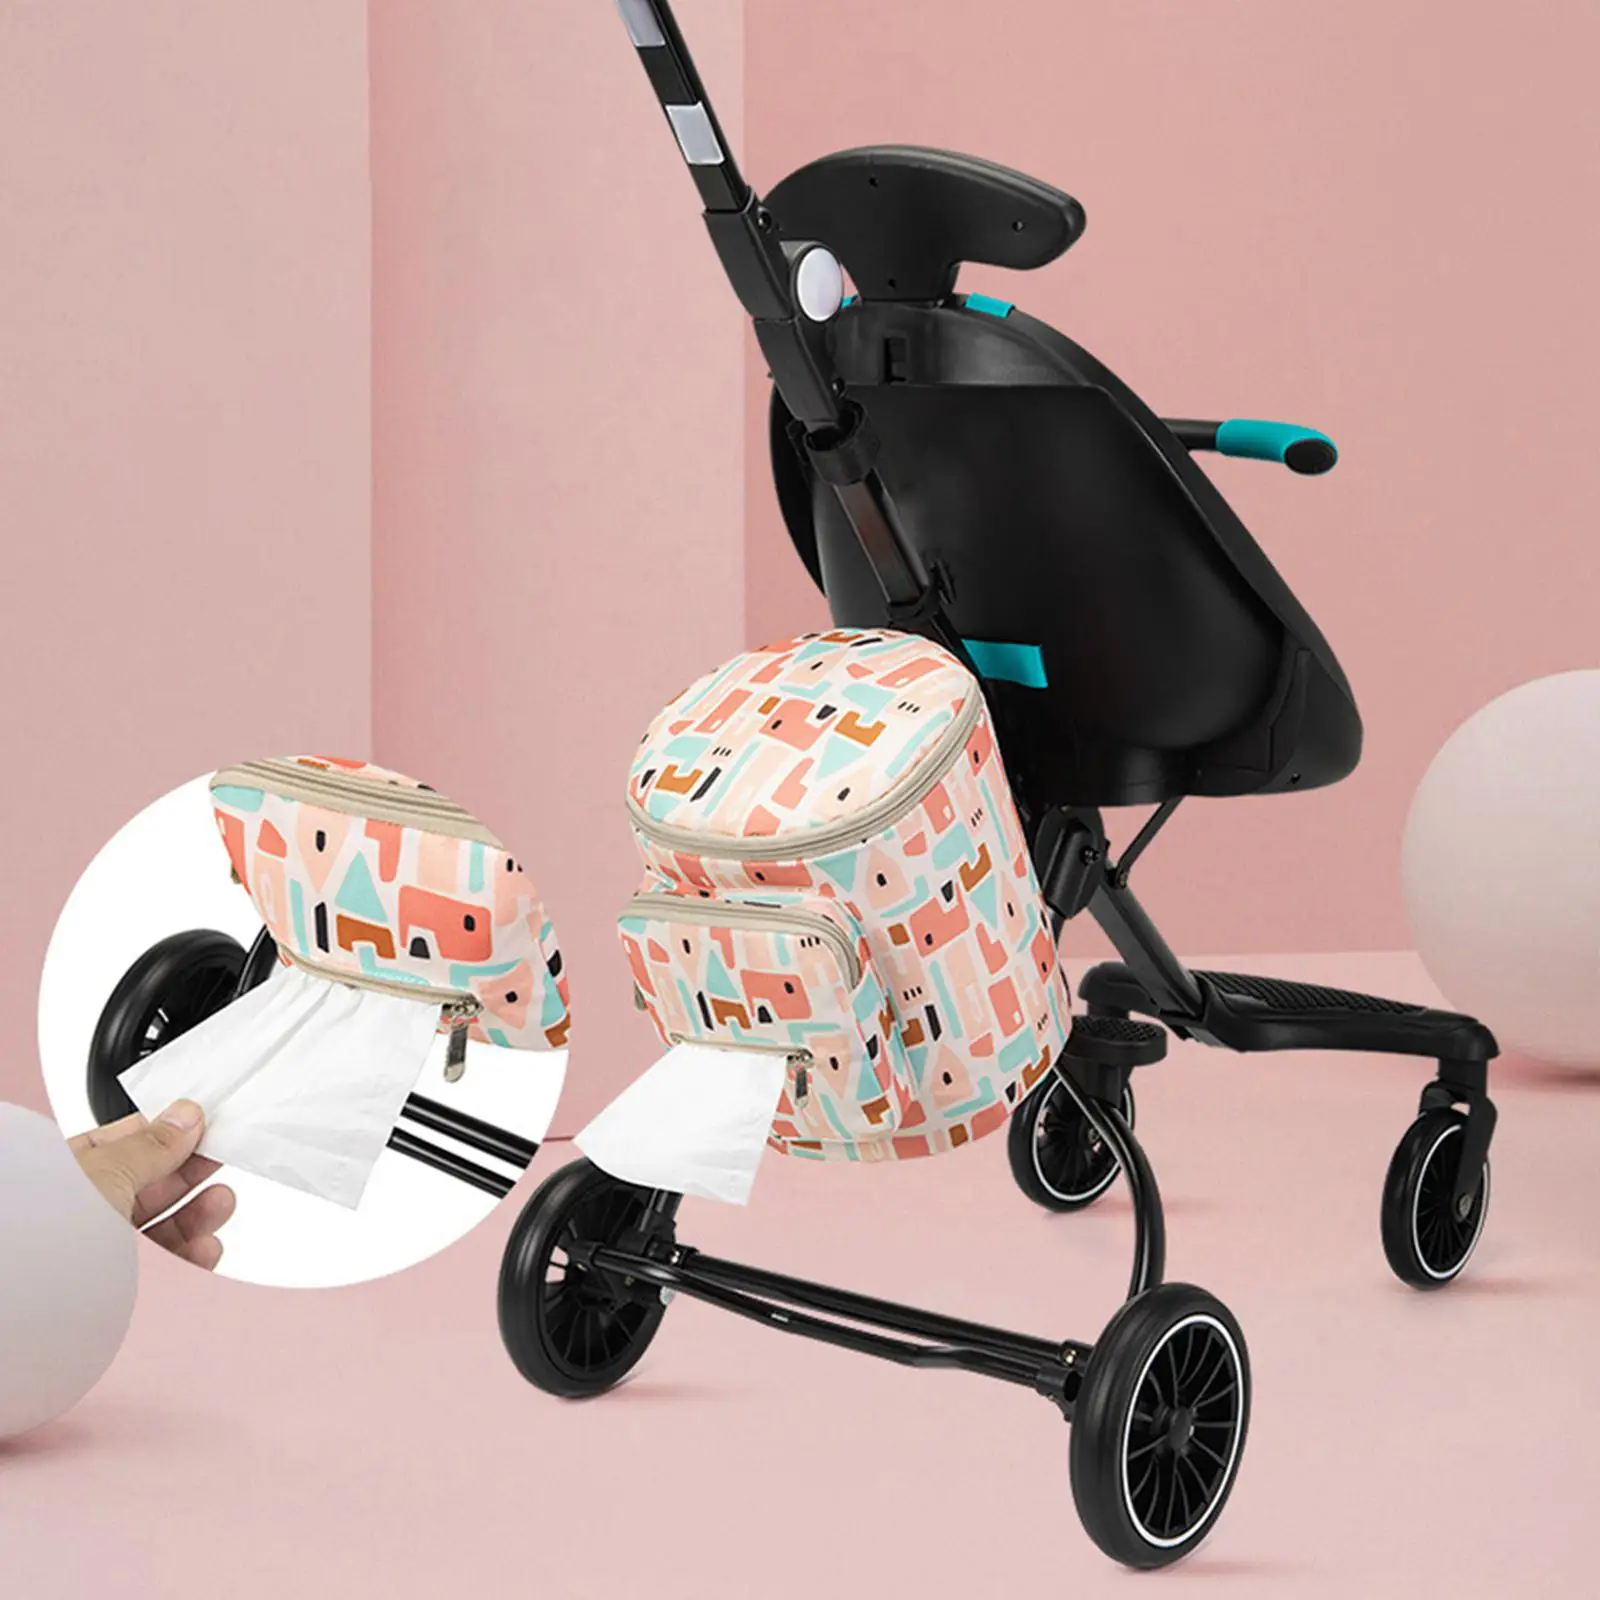 Infant Diaper Bag Stroller Accessories Protable Diaper Storage Waterproof Baby Handbag Mother Outdoor